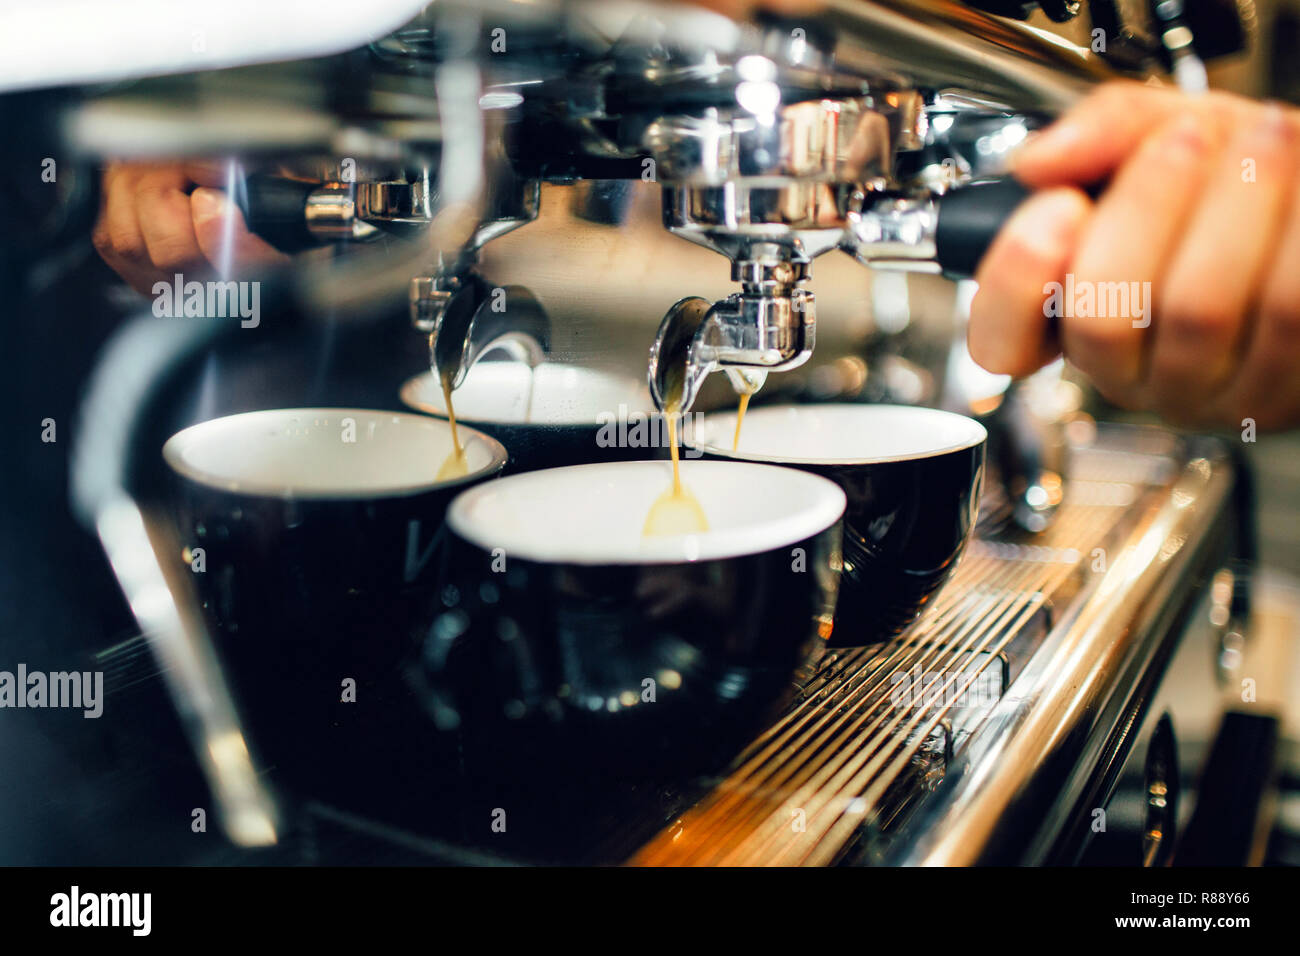 Close up et cut view of man's hand holding cezve à partir de la machine à café au-dessus de deux tasses. Verser le café est dans les tasses Banque D'Images